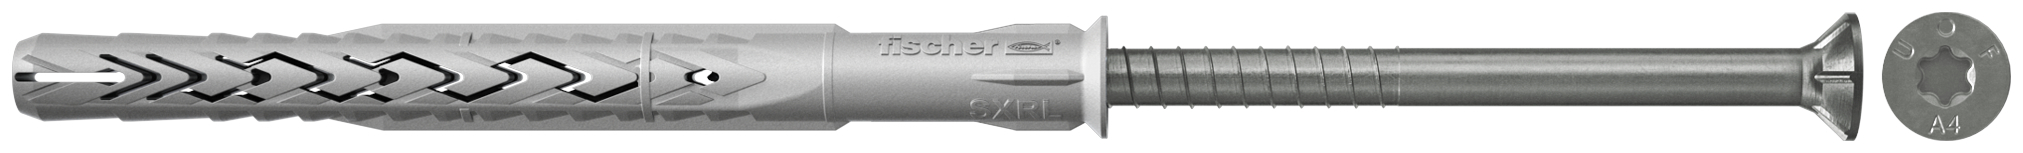 fischer Tasselli prolungati SXRL 10X230 T A4 (1 Pz.) Tassello prolungato in nylon con marcatura CE con vite premontata in acciaio inox A4, T.S.P. impronta torx fie2382